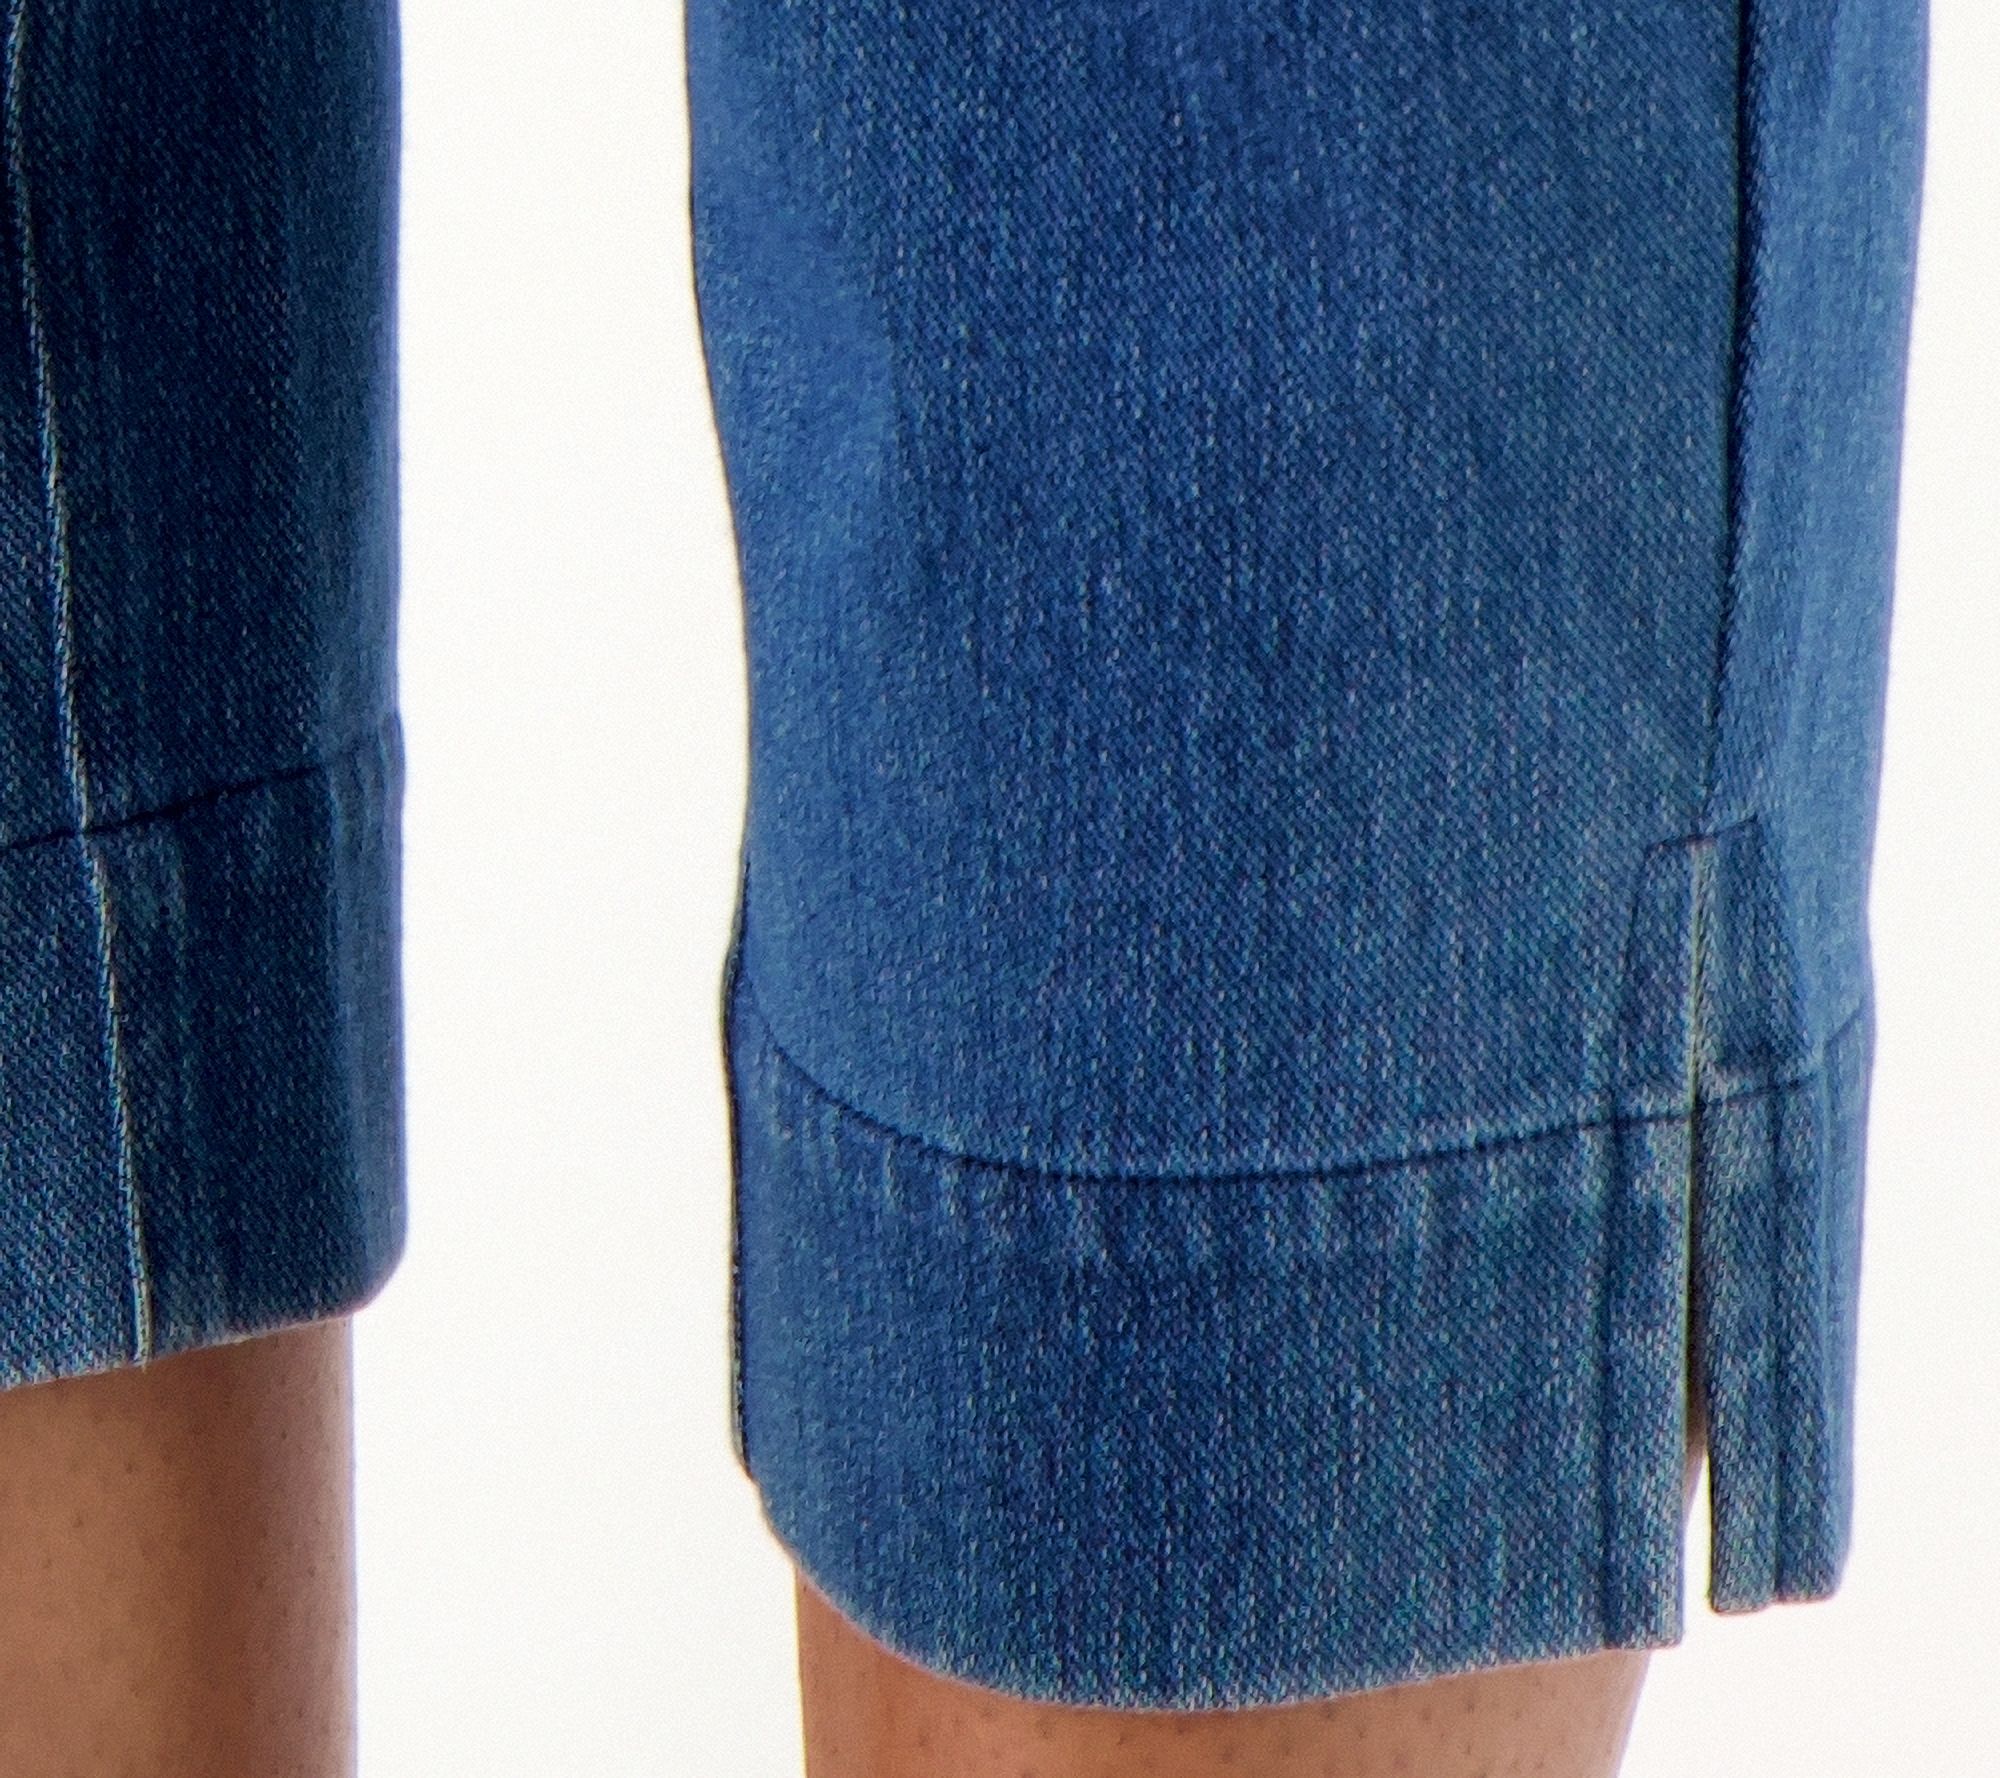 Denim&Co, Pants & Jumpsuits, Denim Co Womens Plus Sz Pants X Comfy Knit  Air Straightcrop Blue A61629